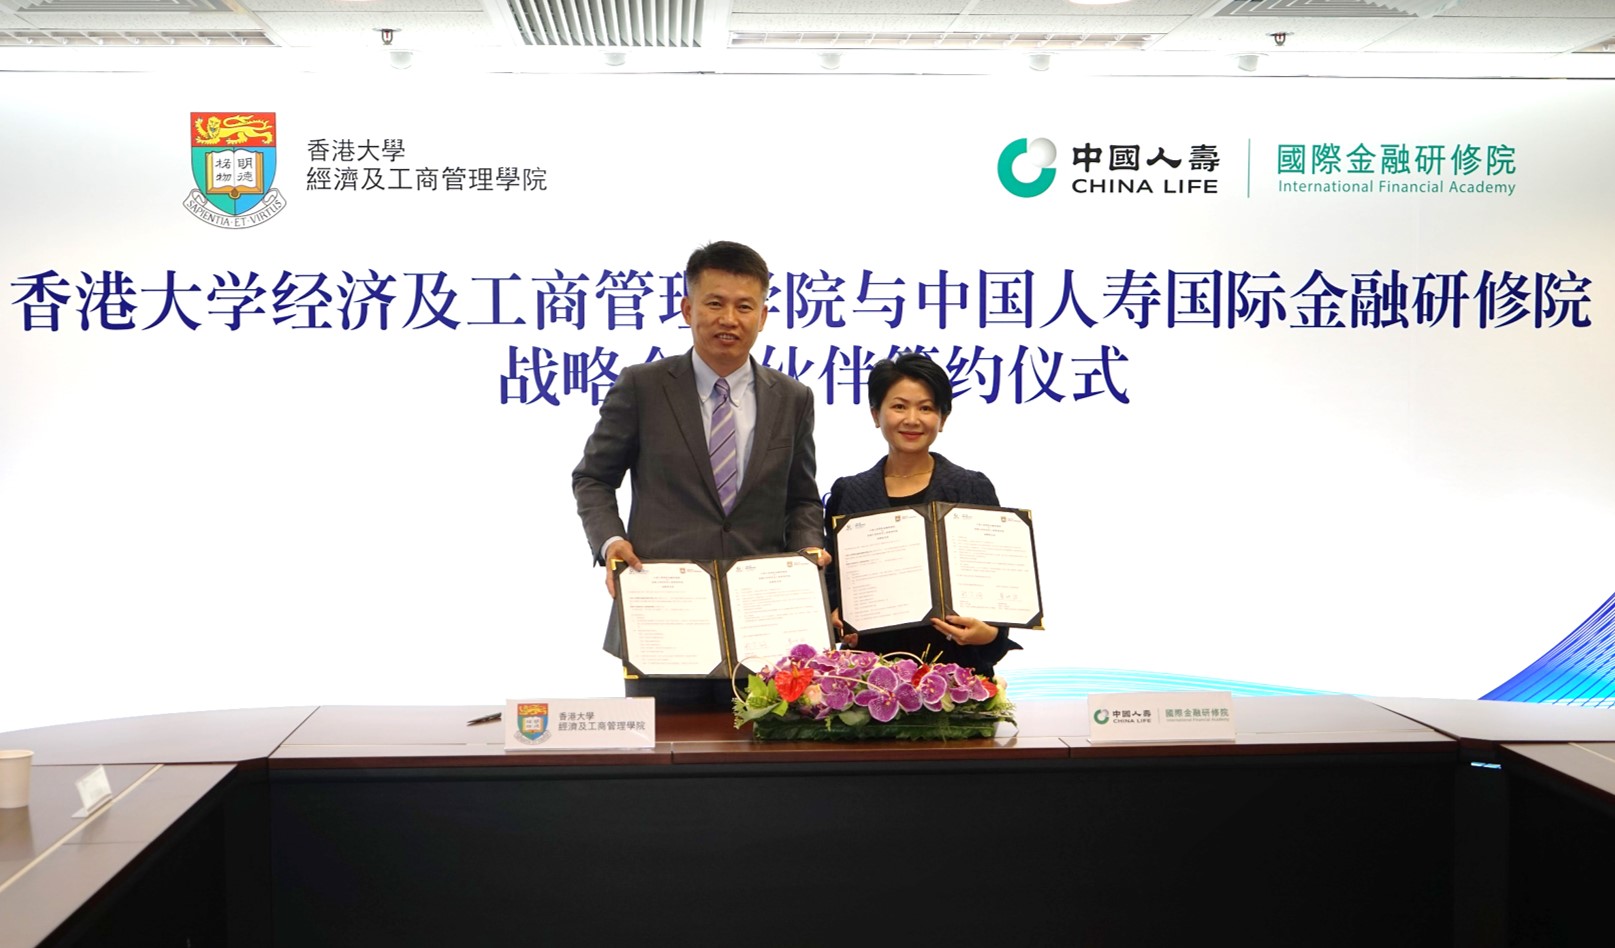 中國人壽國際金融研修院與香港大學經濟及工商管理學院簽署戰略合作夥伴協議